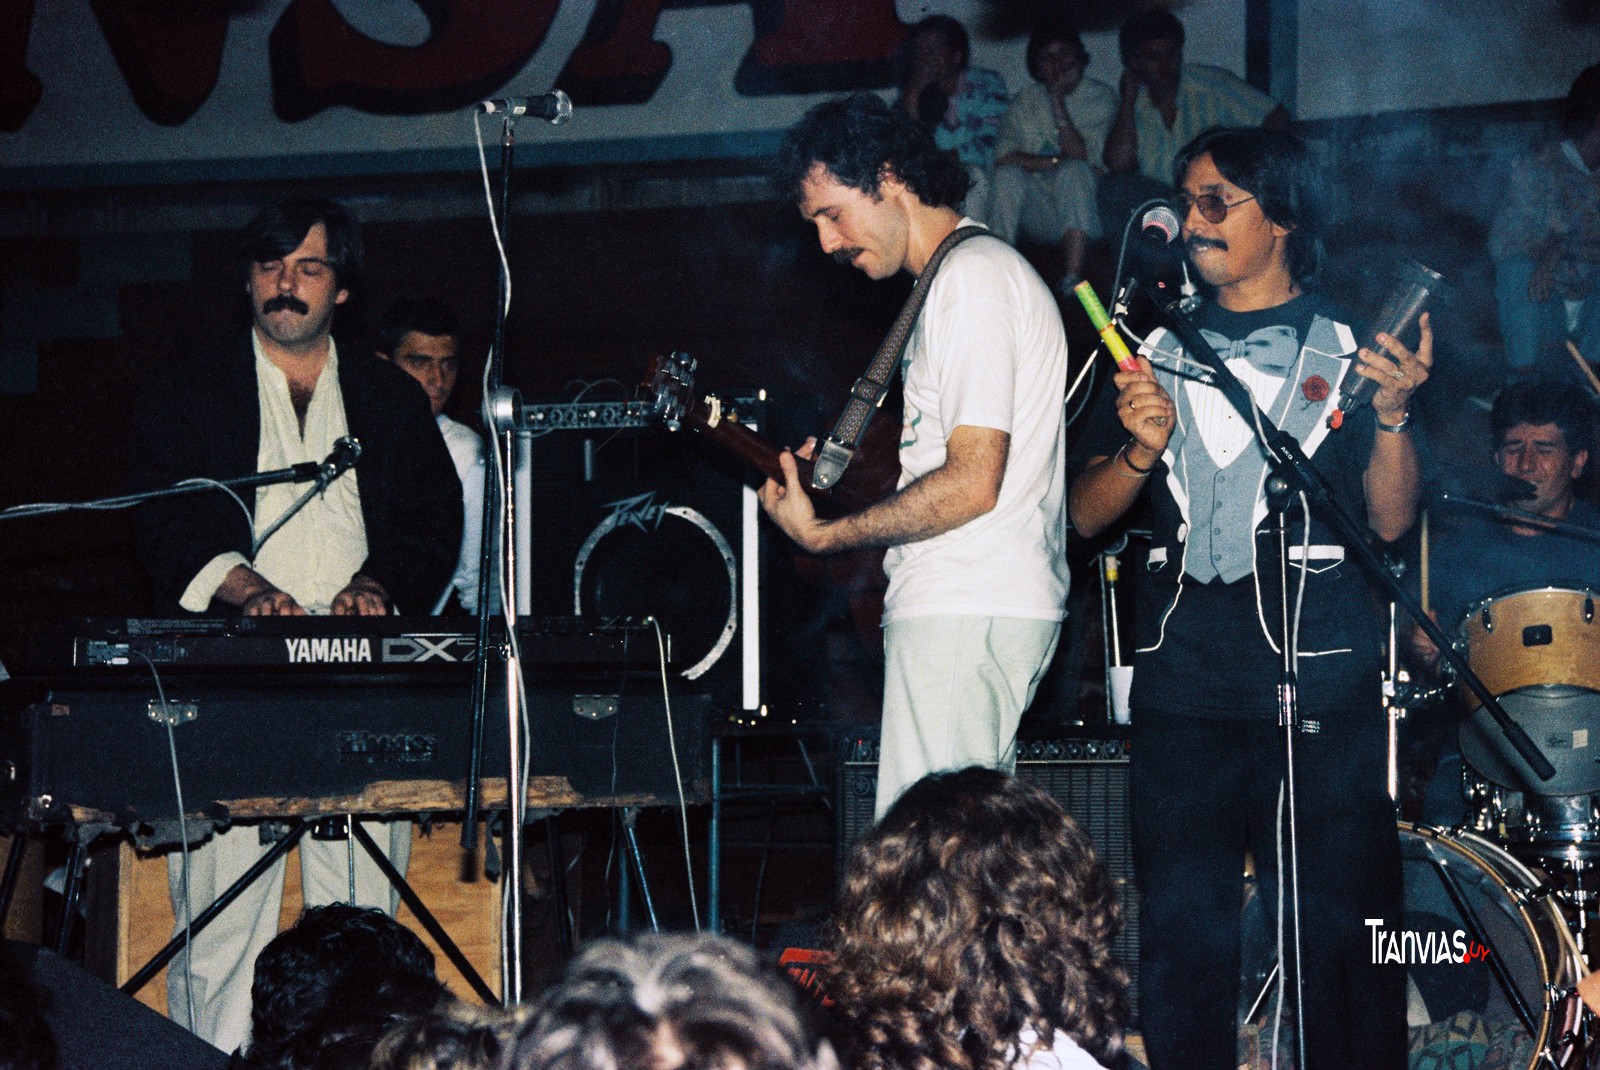 A.Magnone, J.Roos, R.Fleitas, foto aldo novick 1990, Club Atenas baile de las Llamadas